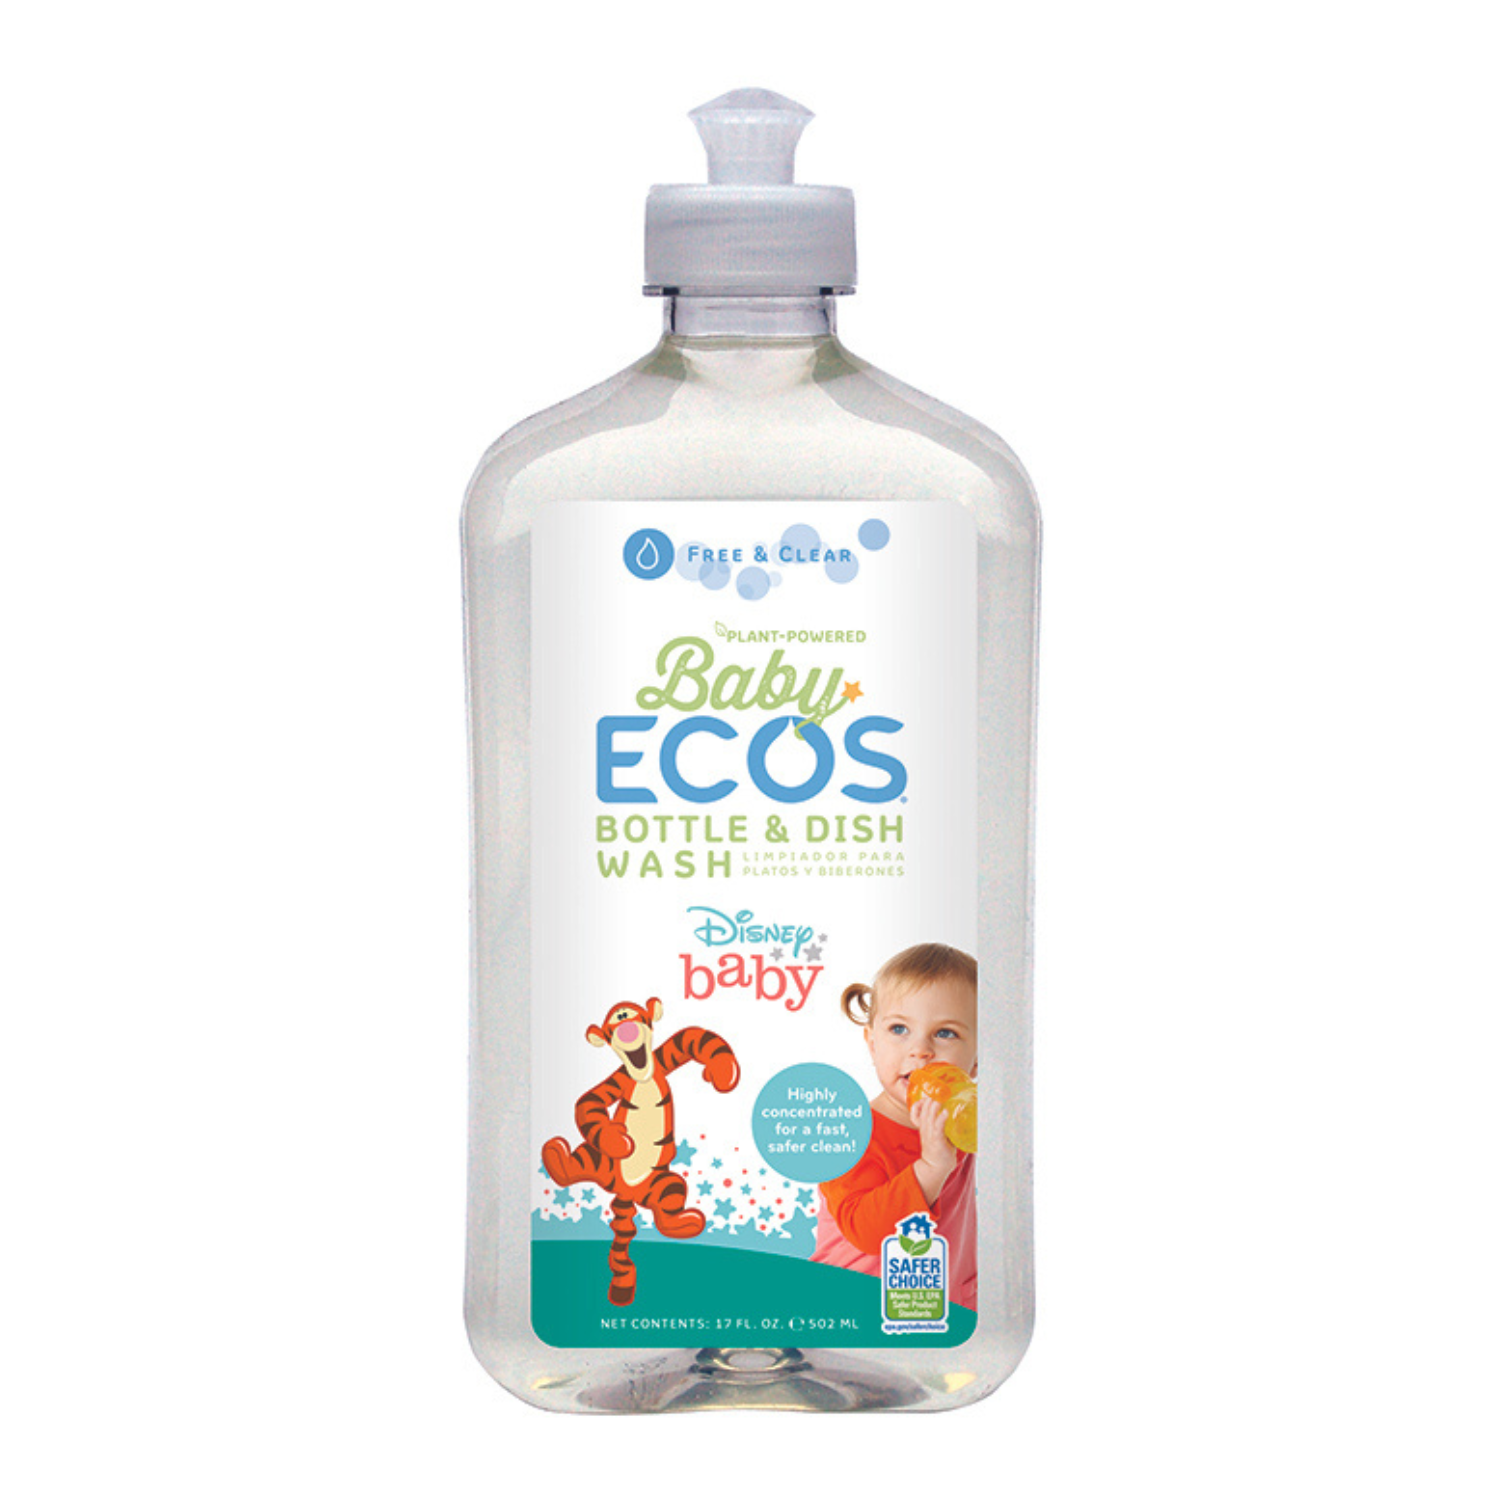 Baby ECOS Bottle & Dish Wash Free & Clear Disney 17oz.